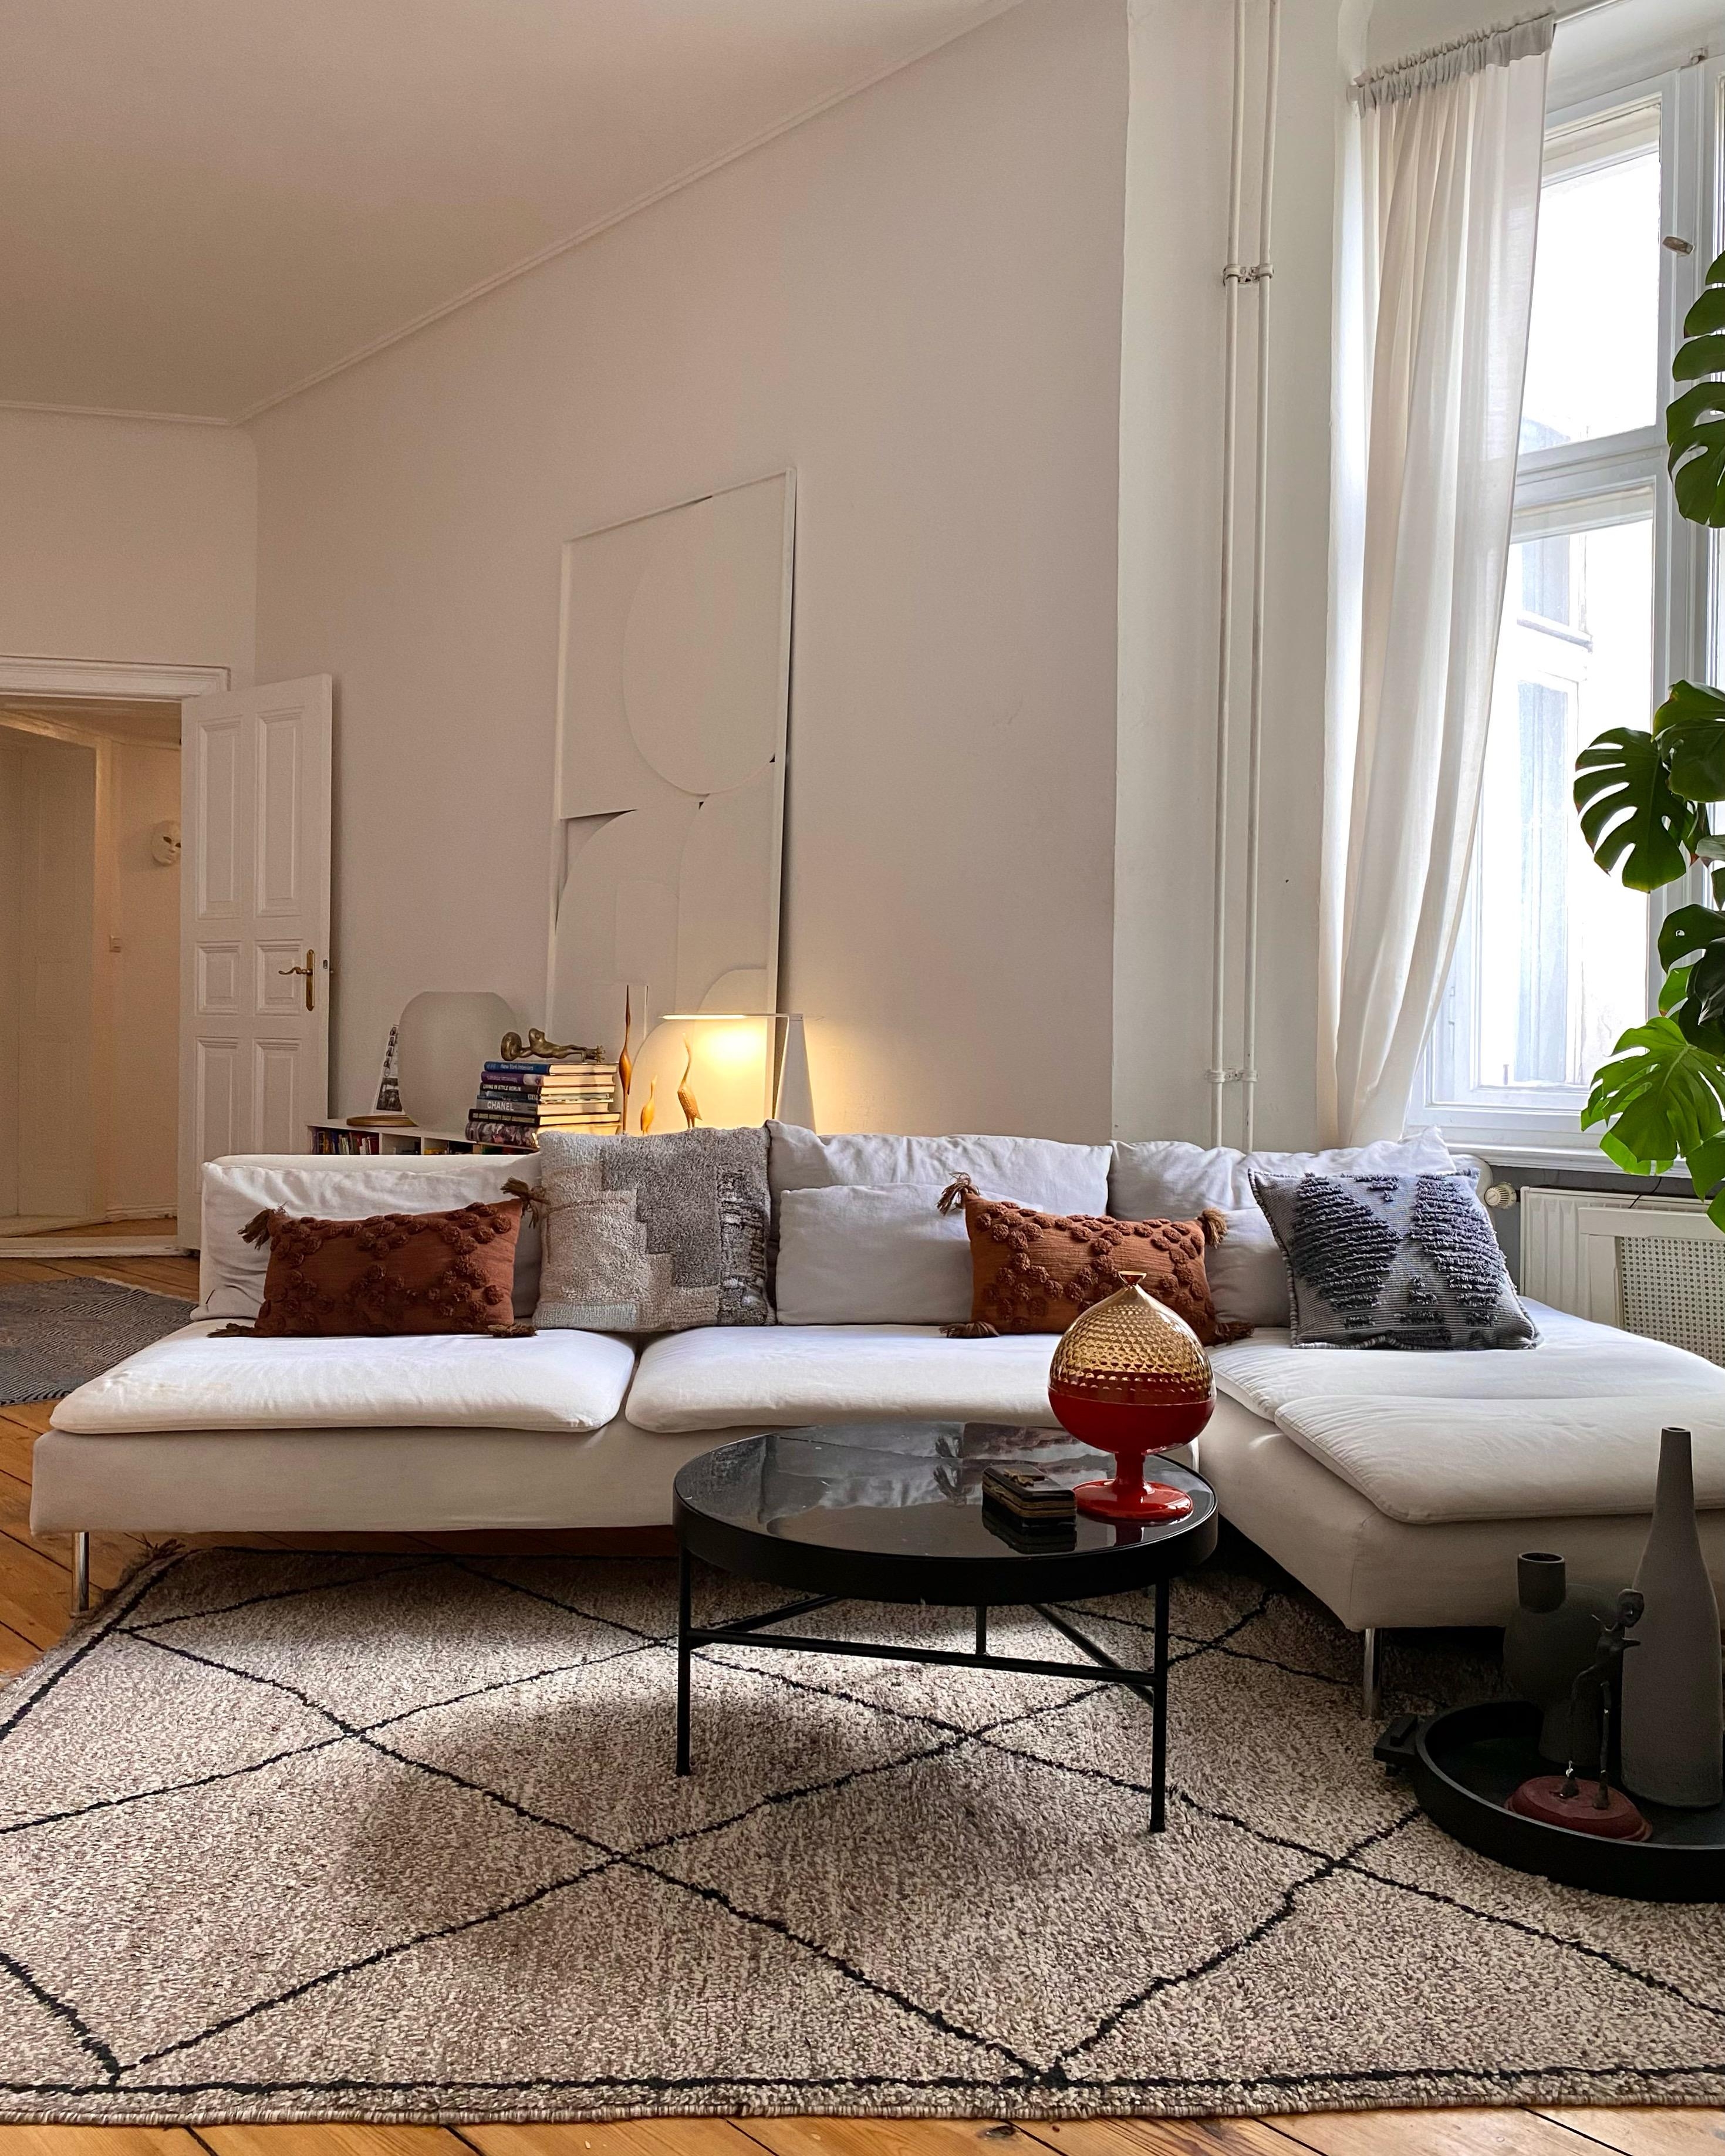 Have a nice day! 🙌🏽♥️ #wohnzimmer #sofa #couch #kunst #teppich #beniourain